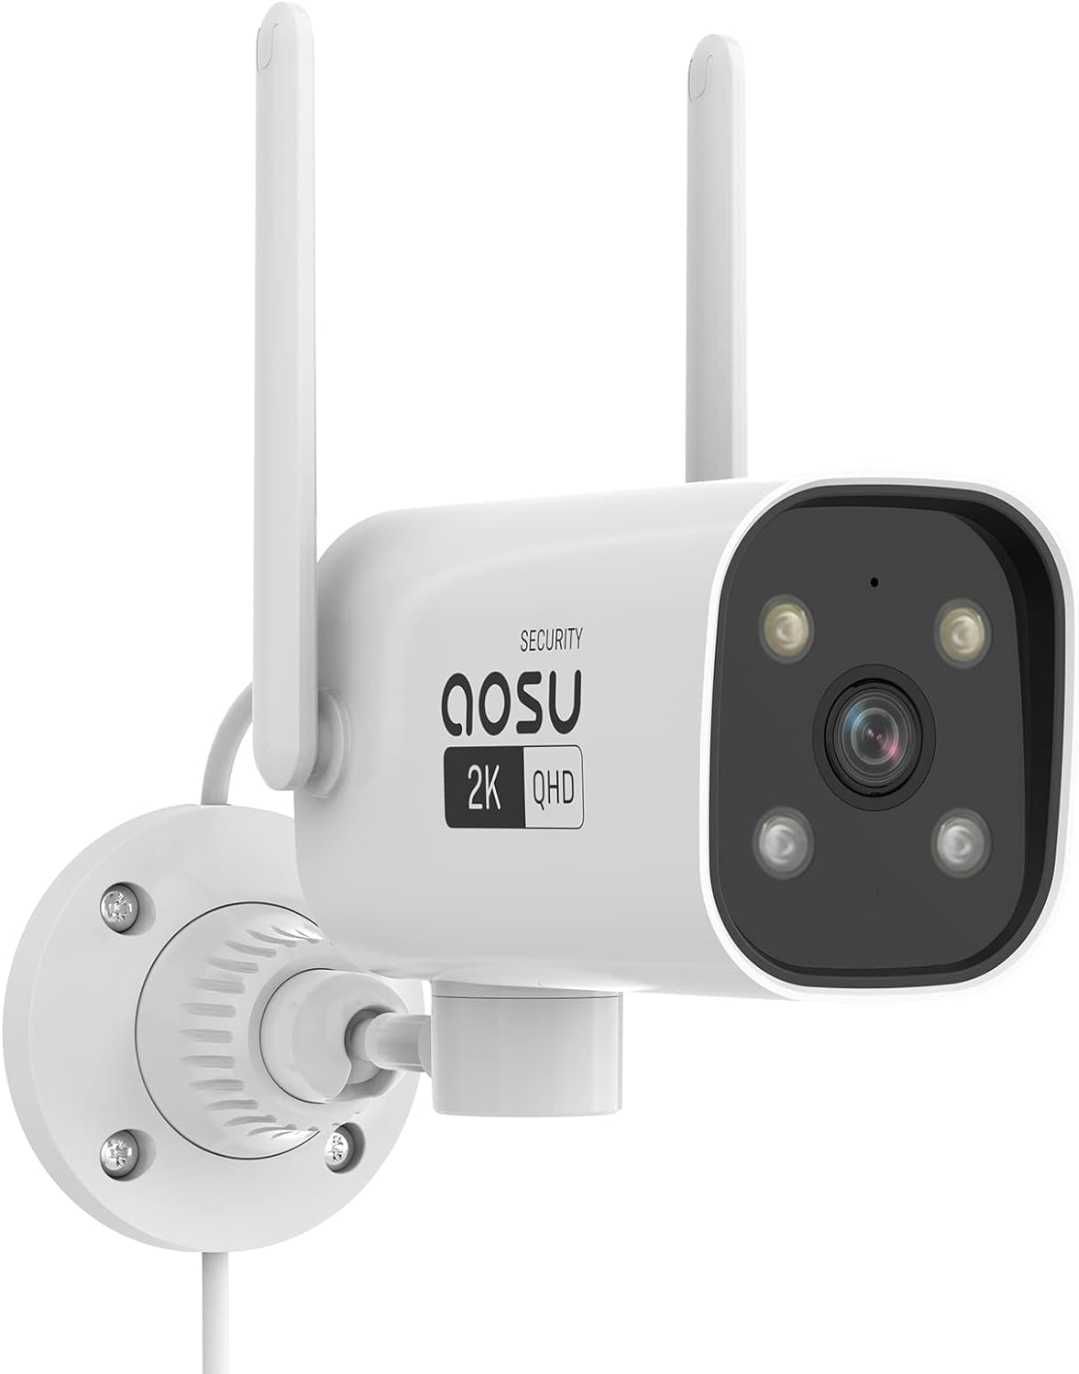 Kamera zewnętrzna AOSU 2K WiFi 5GHz & 2.4 GHz, audio, 2 szt.